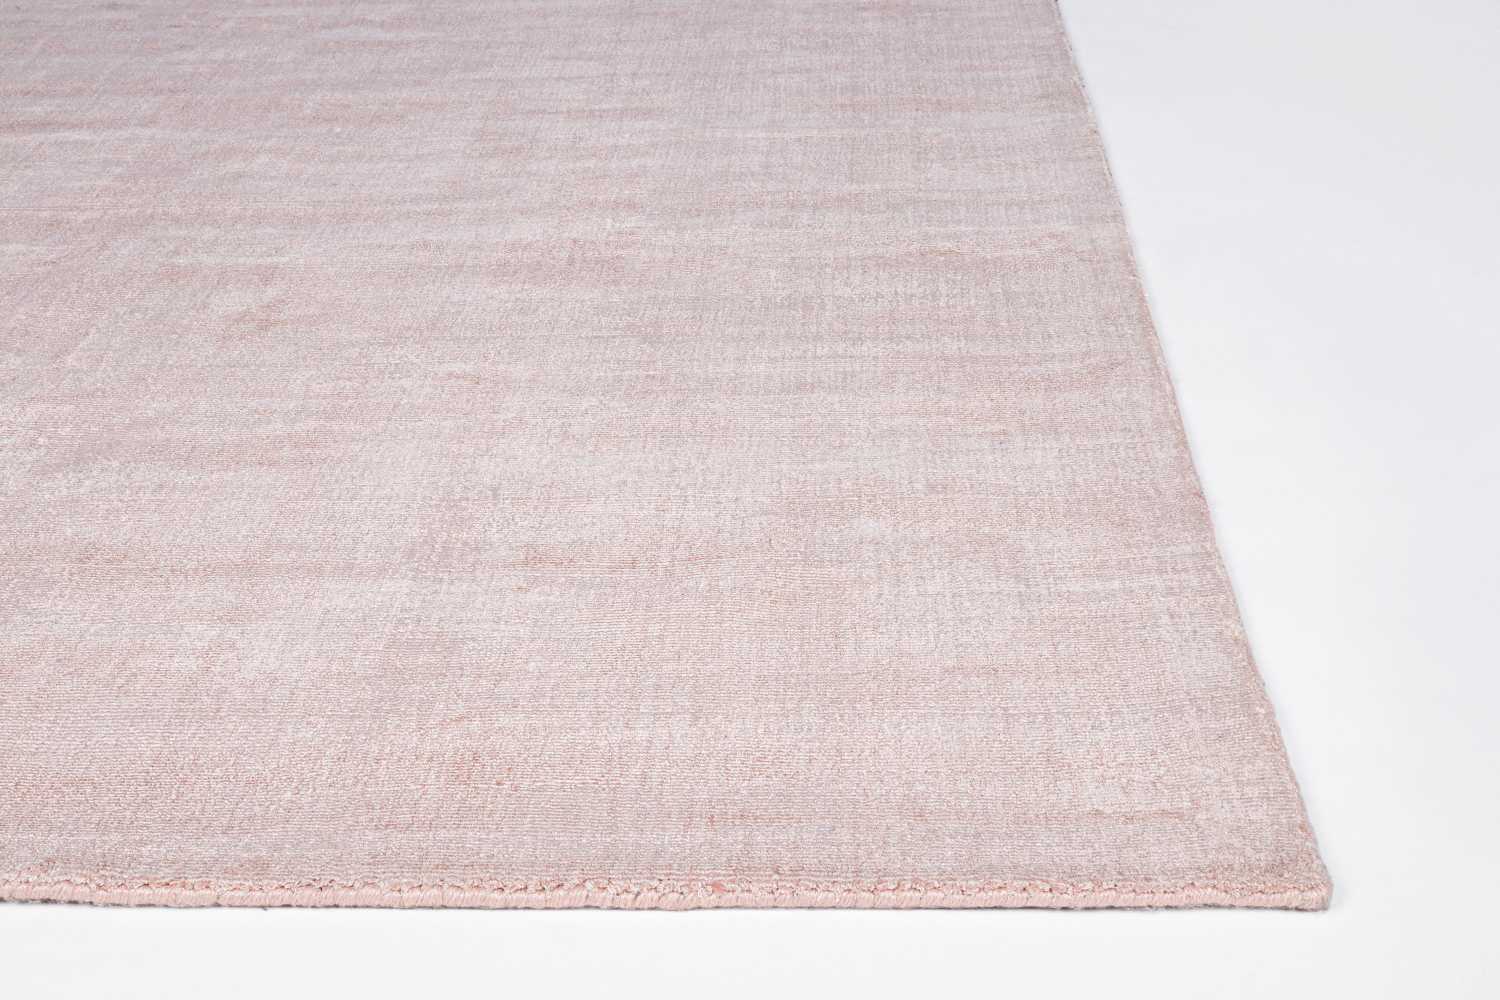 Der Teppich Cottage überzeugt mit seinem modernen Design. Gefertigt wurde die Vorderseite aus 100% Viskose und die Rückseite ist aus 100% Baumwolle. Der Teppich besitzt einen rosa Farbton und die Maße von 160x230 cm.